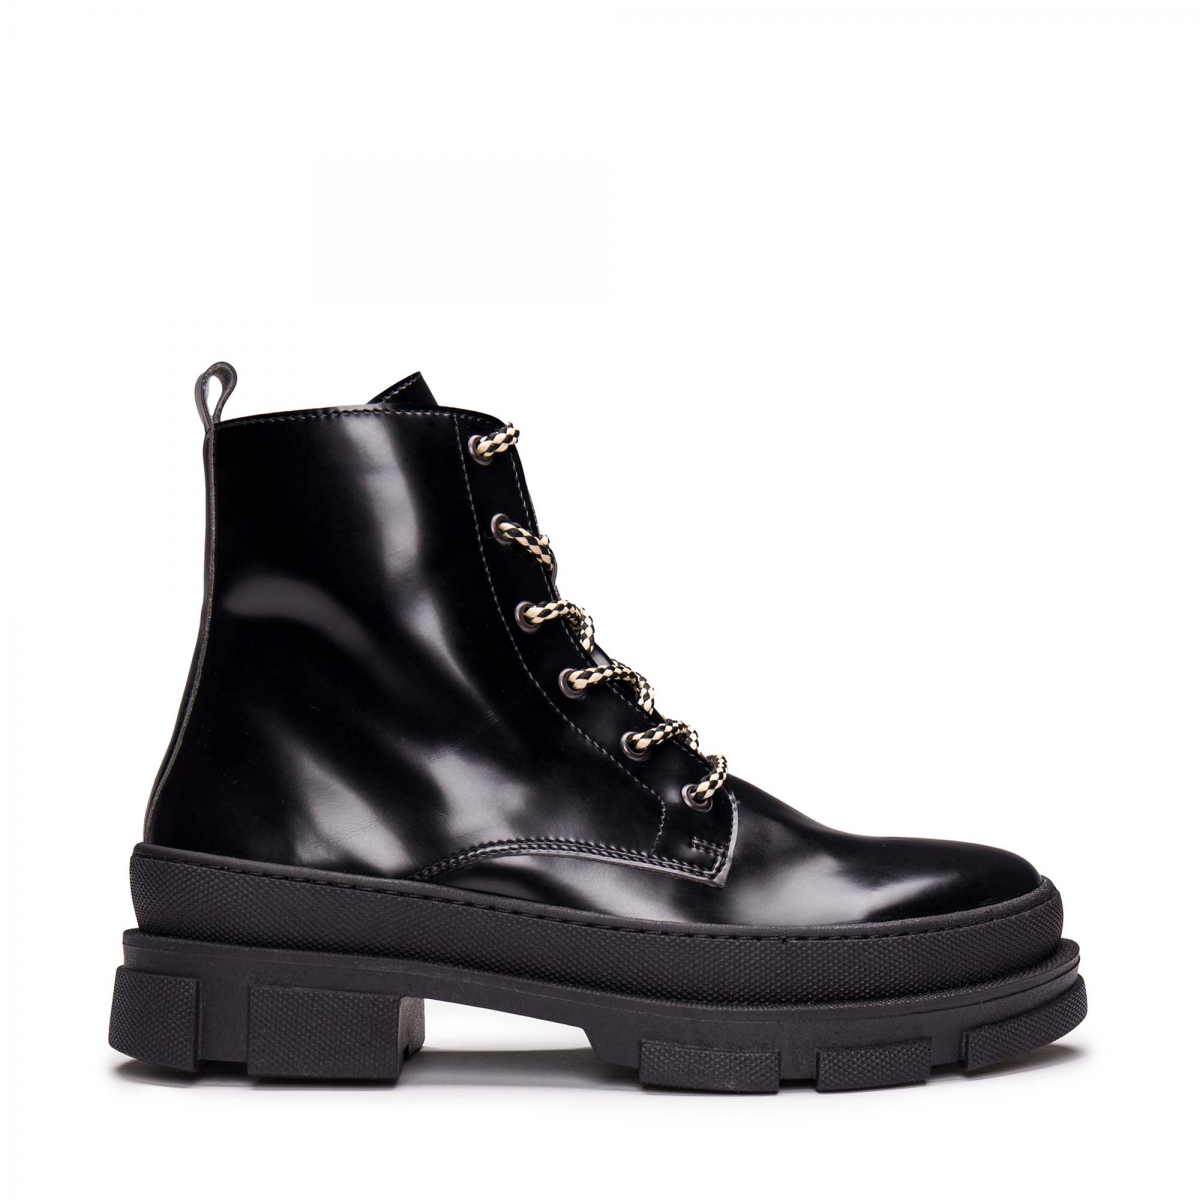 West Cape Corn - Black Vegan Leather Boots